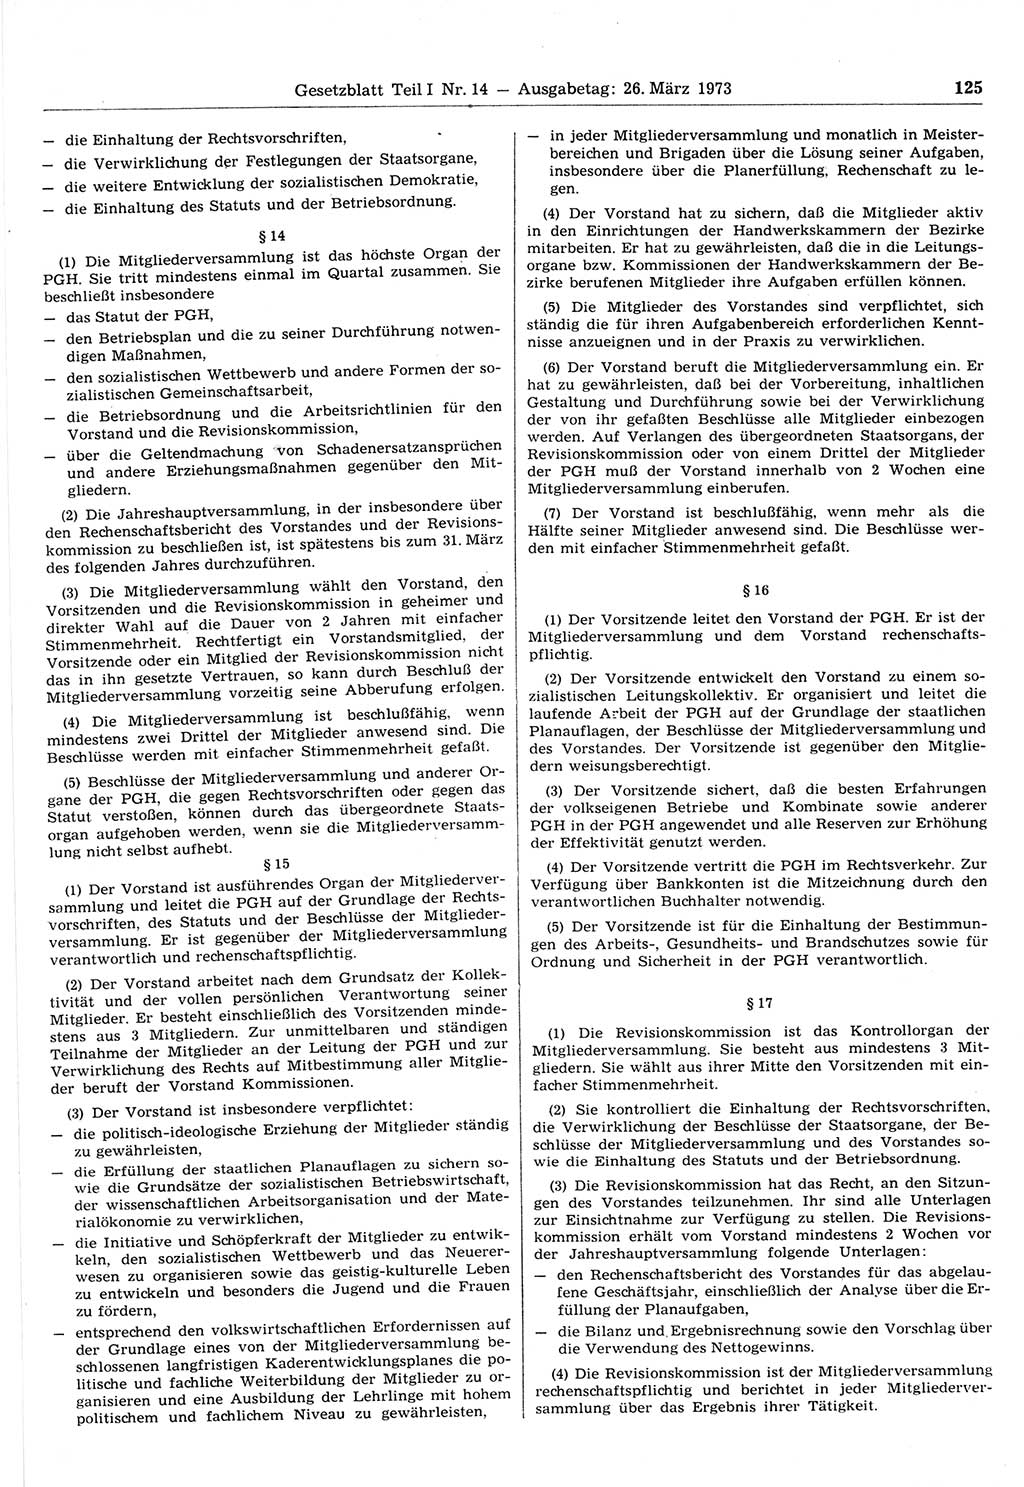 Gesetzblatt (GBl.) der Deutschen Demokratischen Republik (DDR) Teil Ⅰ 1973, Seite 125 (GBl. DDR Ⅰ 1973, S. 125)